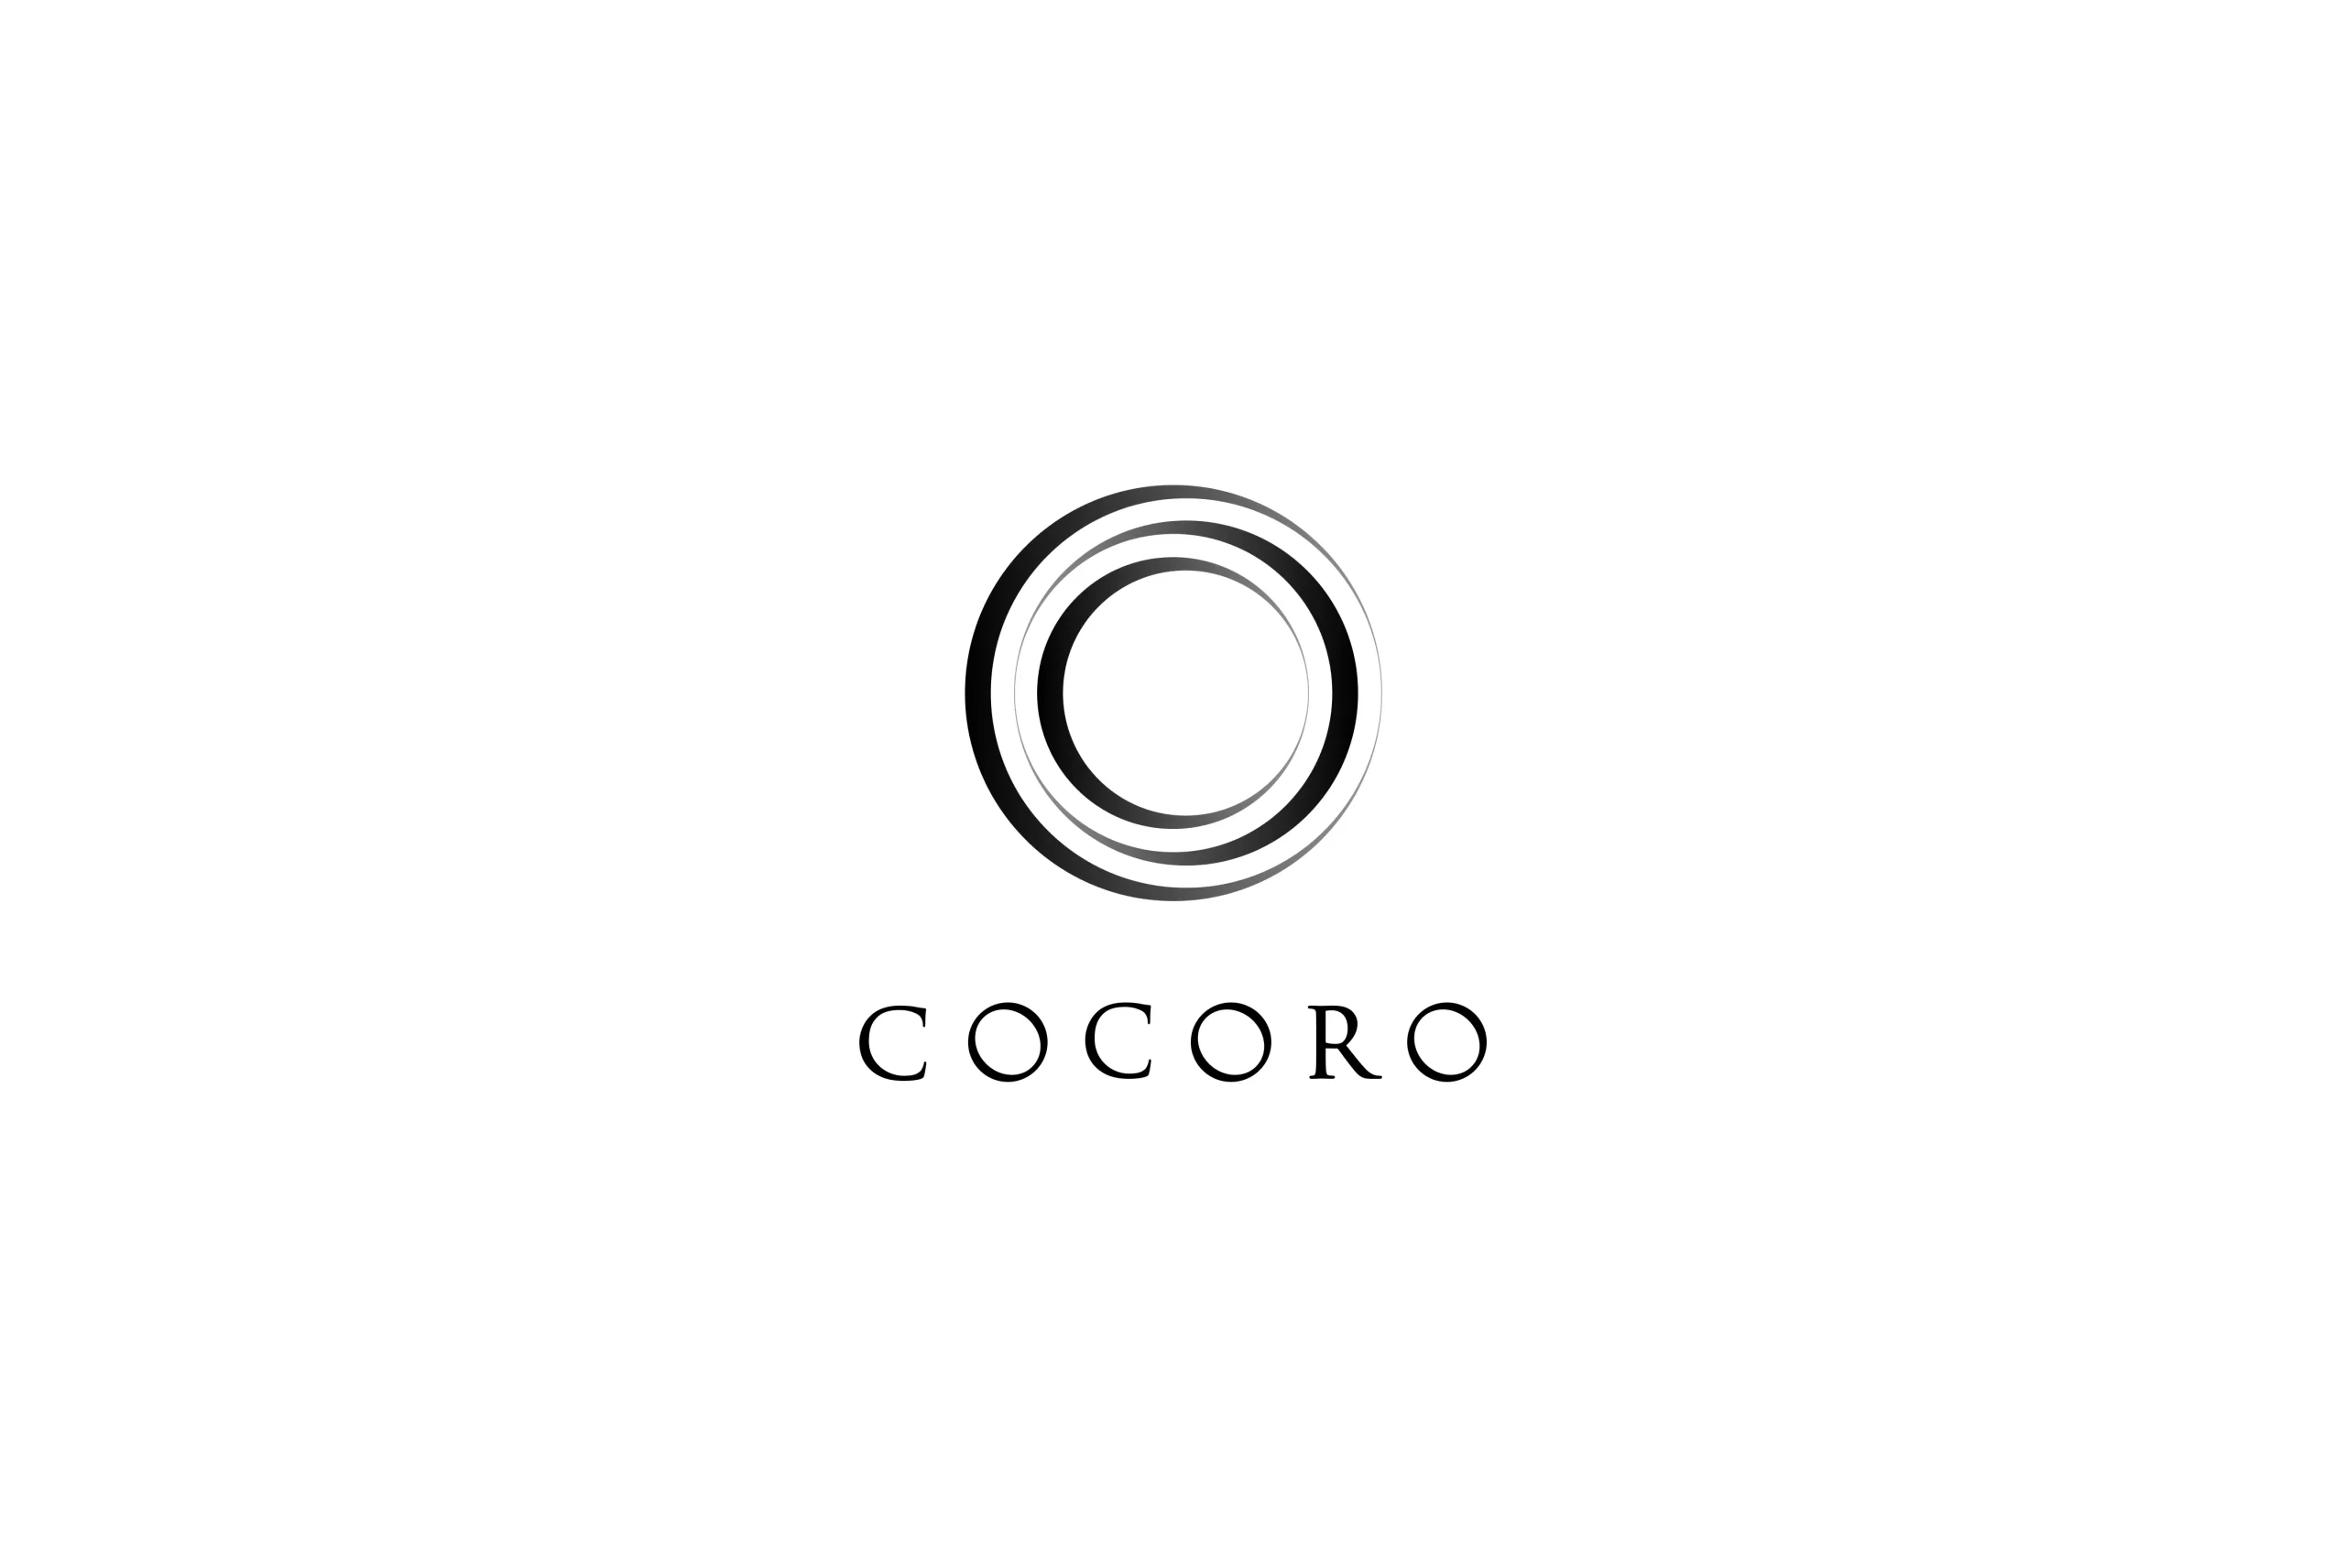 アイウェア ブランドcocoro、メガネブランド、ロゴ制作、実績、ロゴマーク